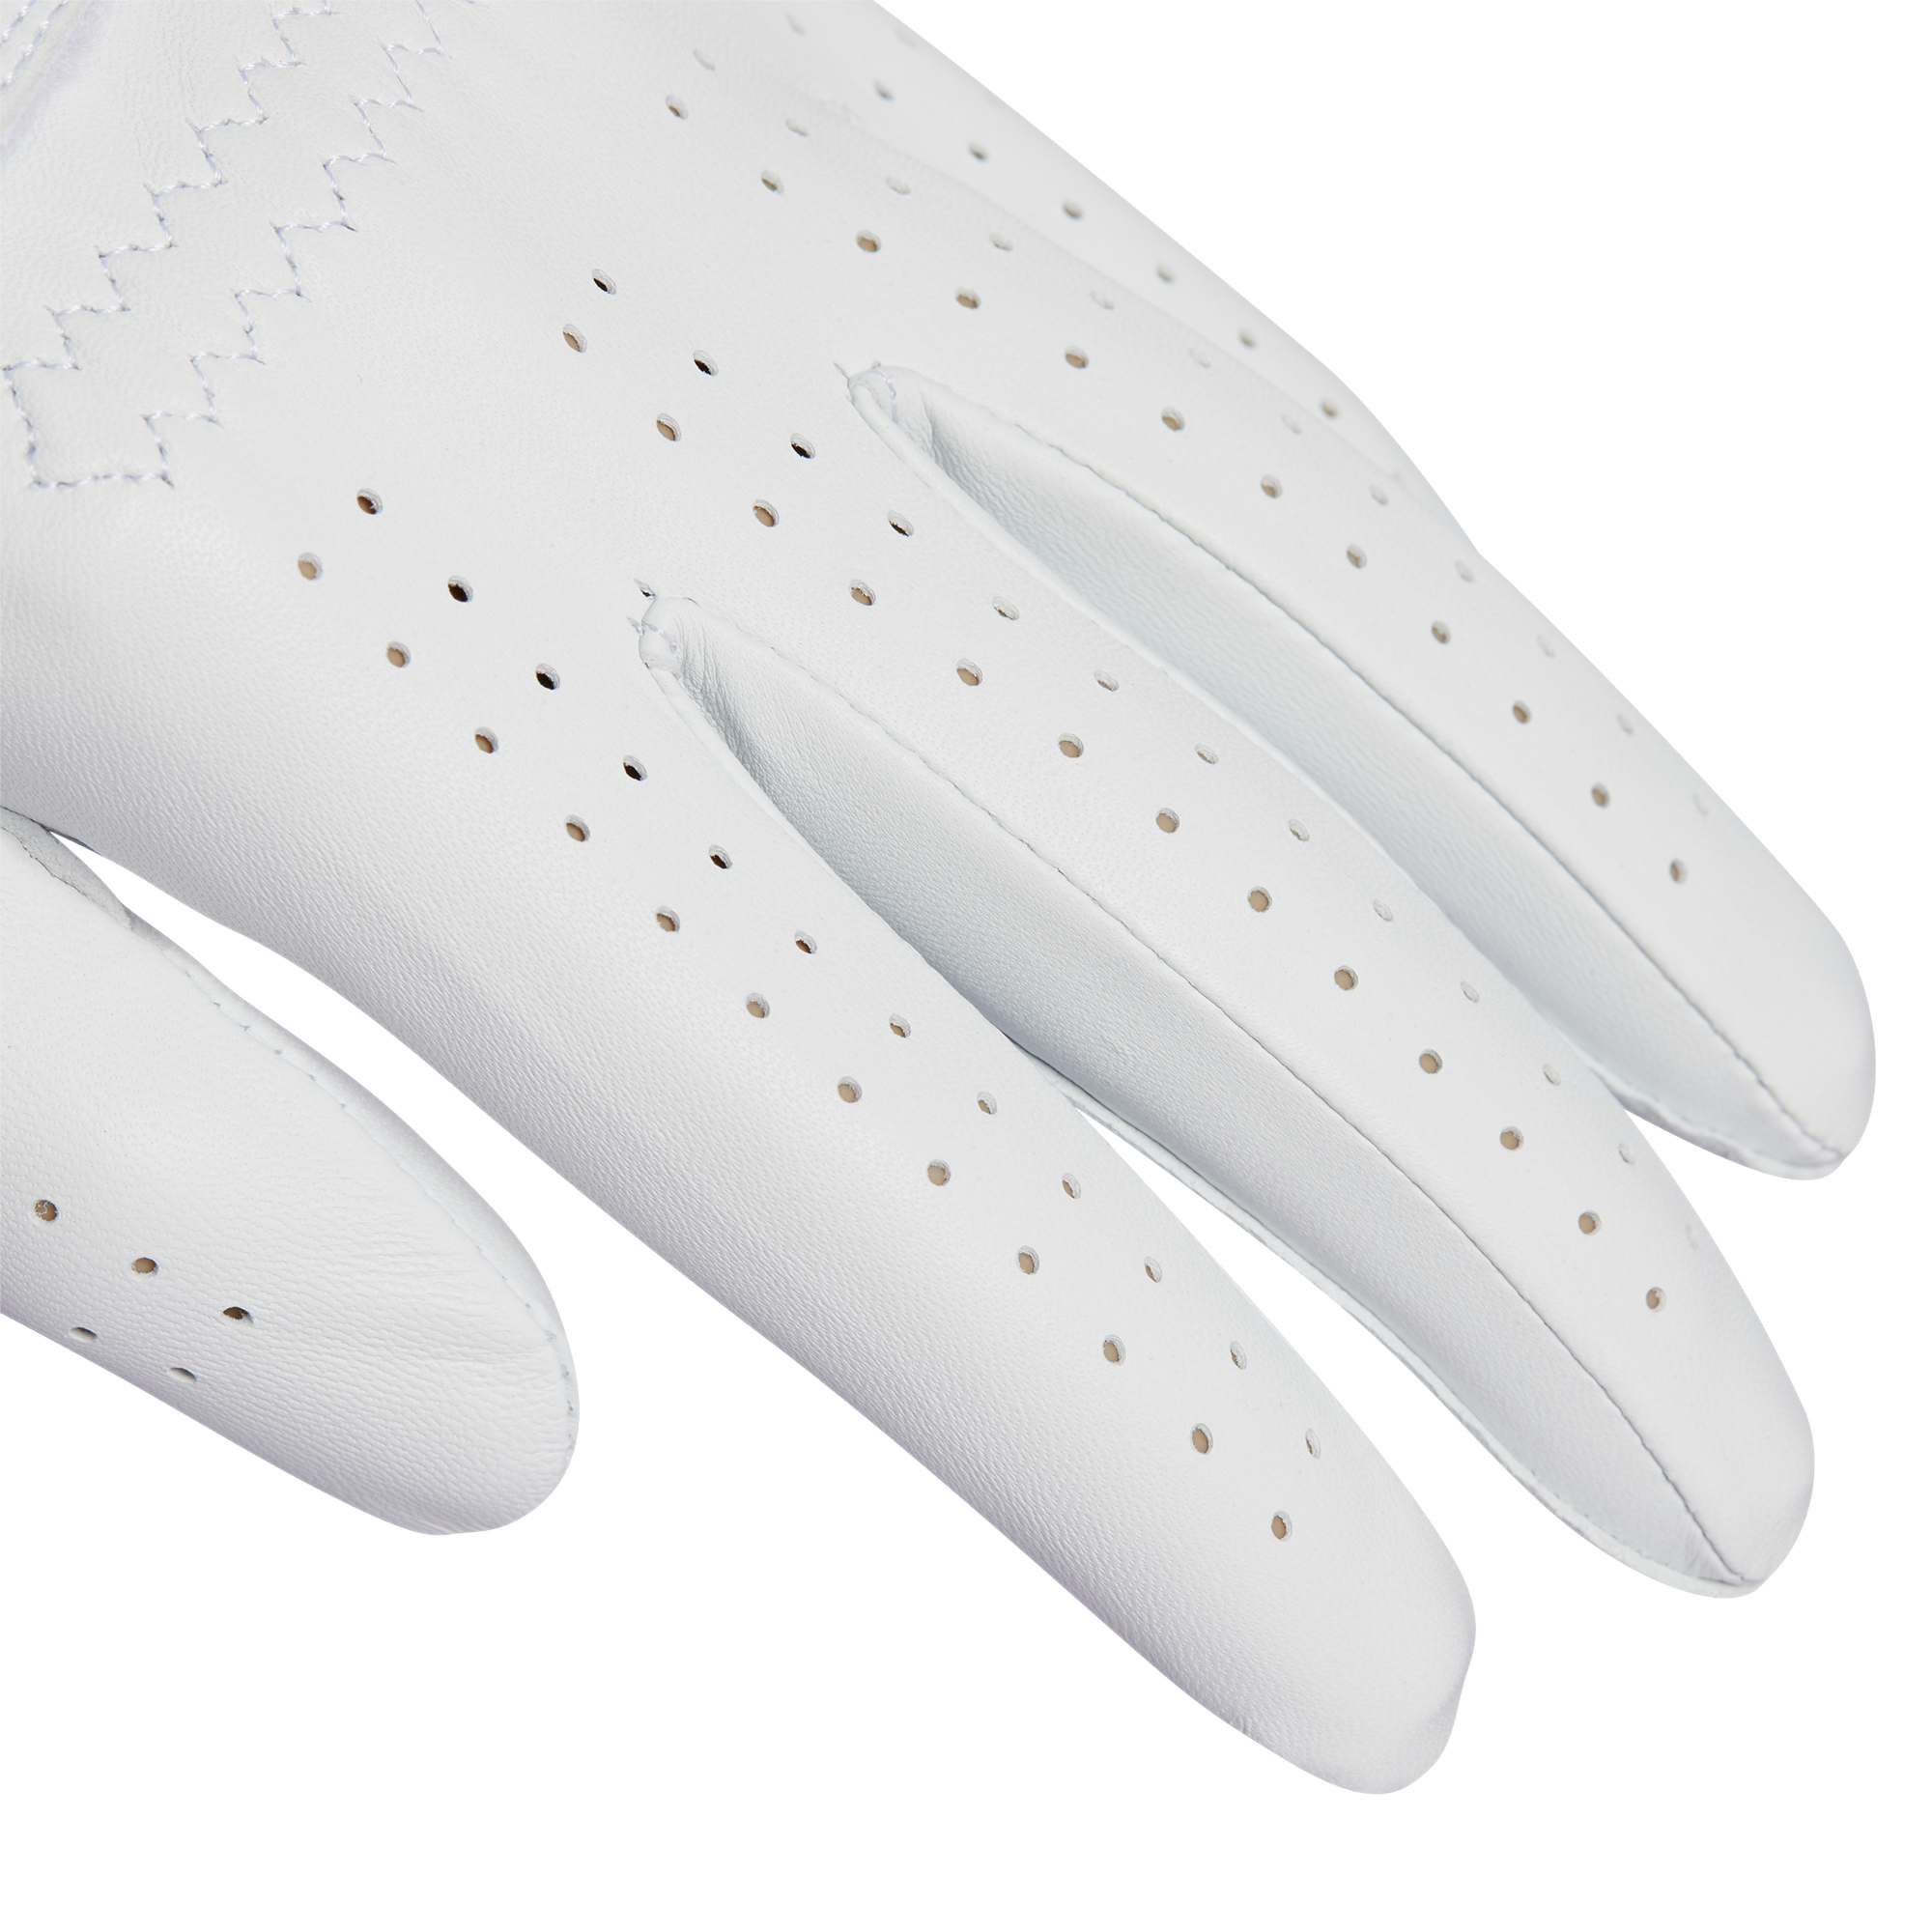 'Cabretta LEATHER' Golf Glove  - MEN